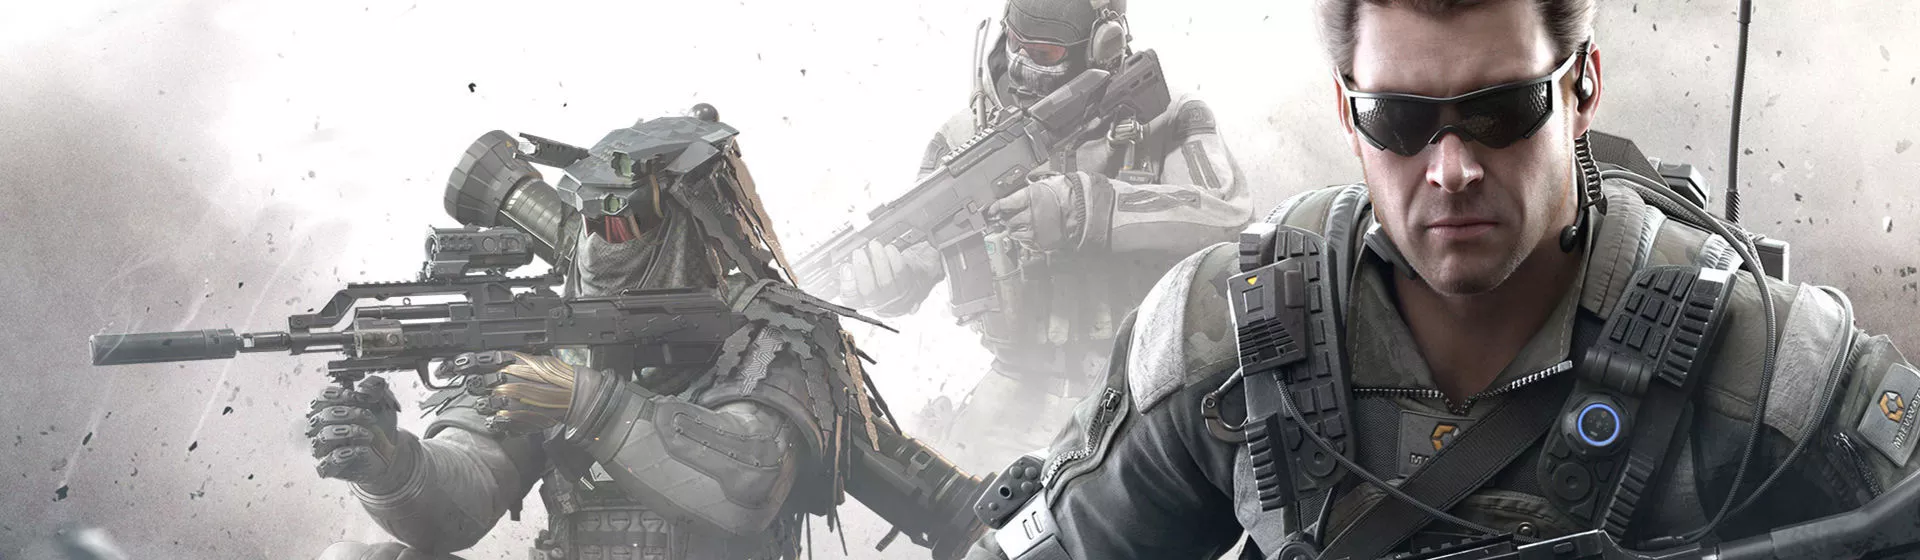 Atualização de Neve Final, conheça a temporada 11 de Call of Duty  Mobile-Tutoriais de jogos-LDPlayer